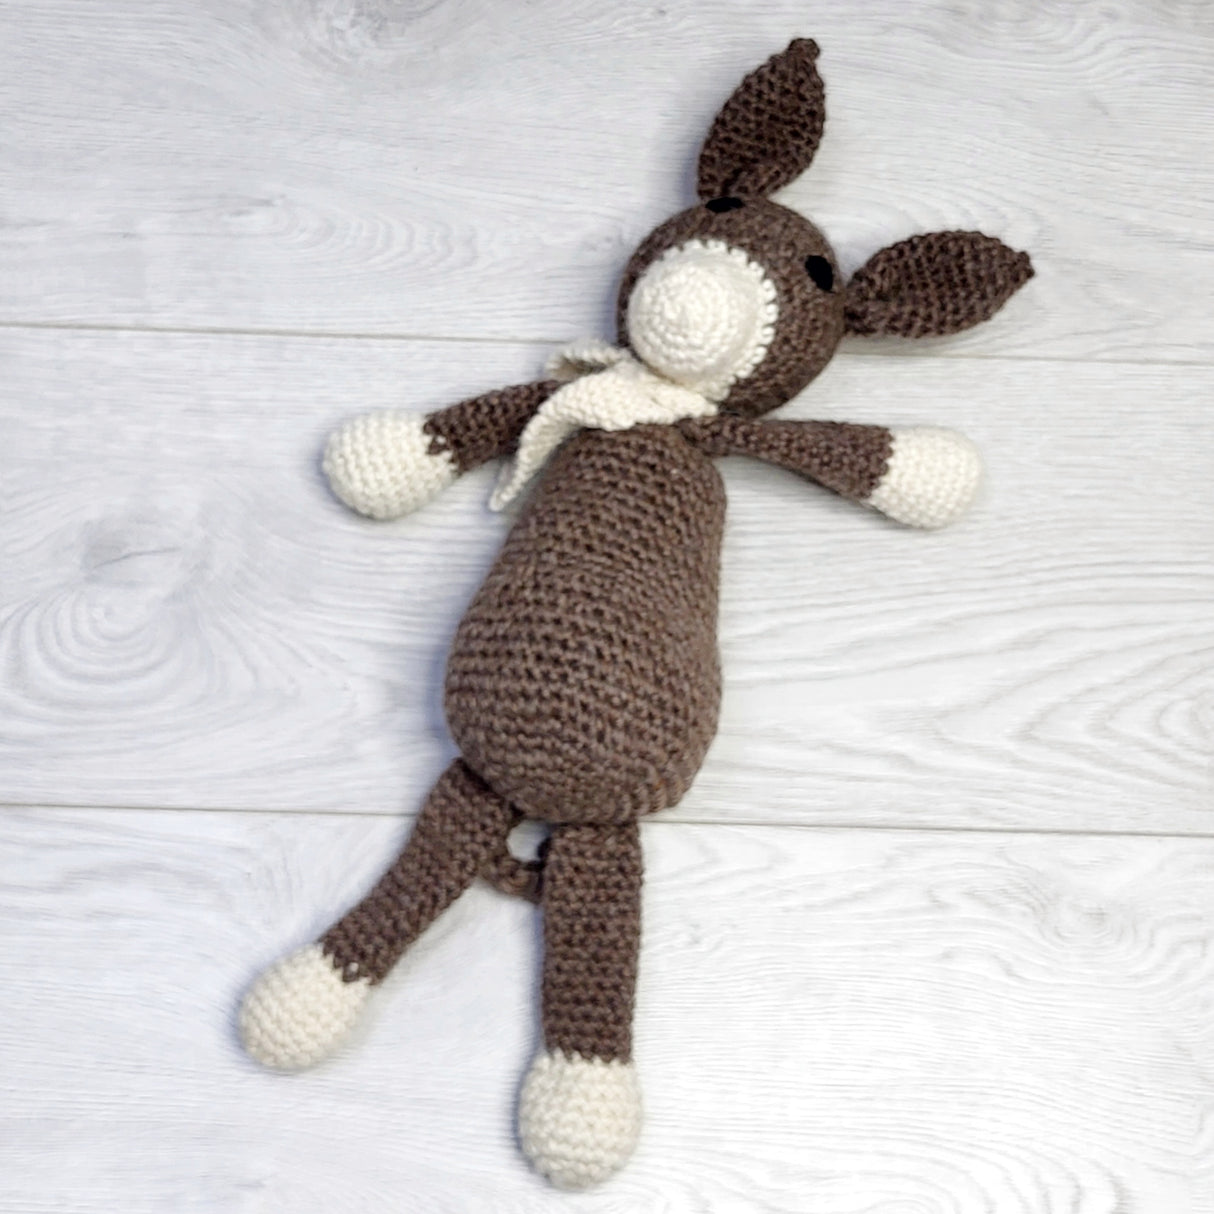 SPLT4 - Handmade crochet kangaroo plush